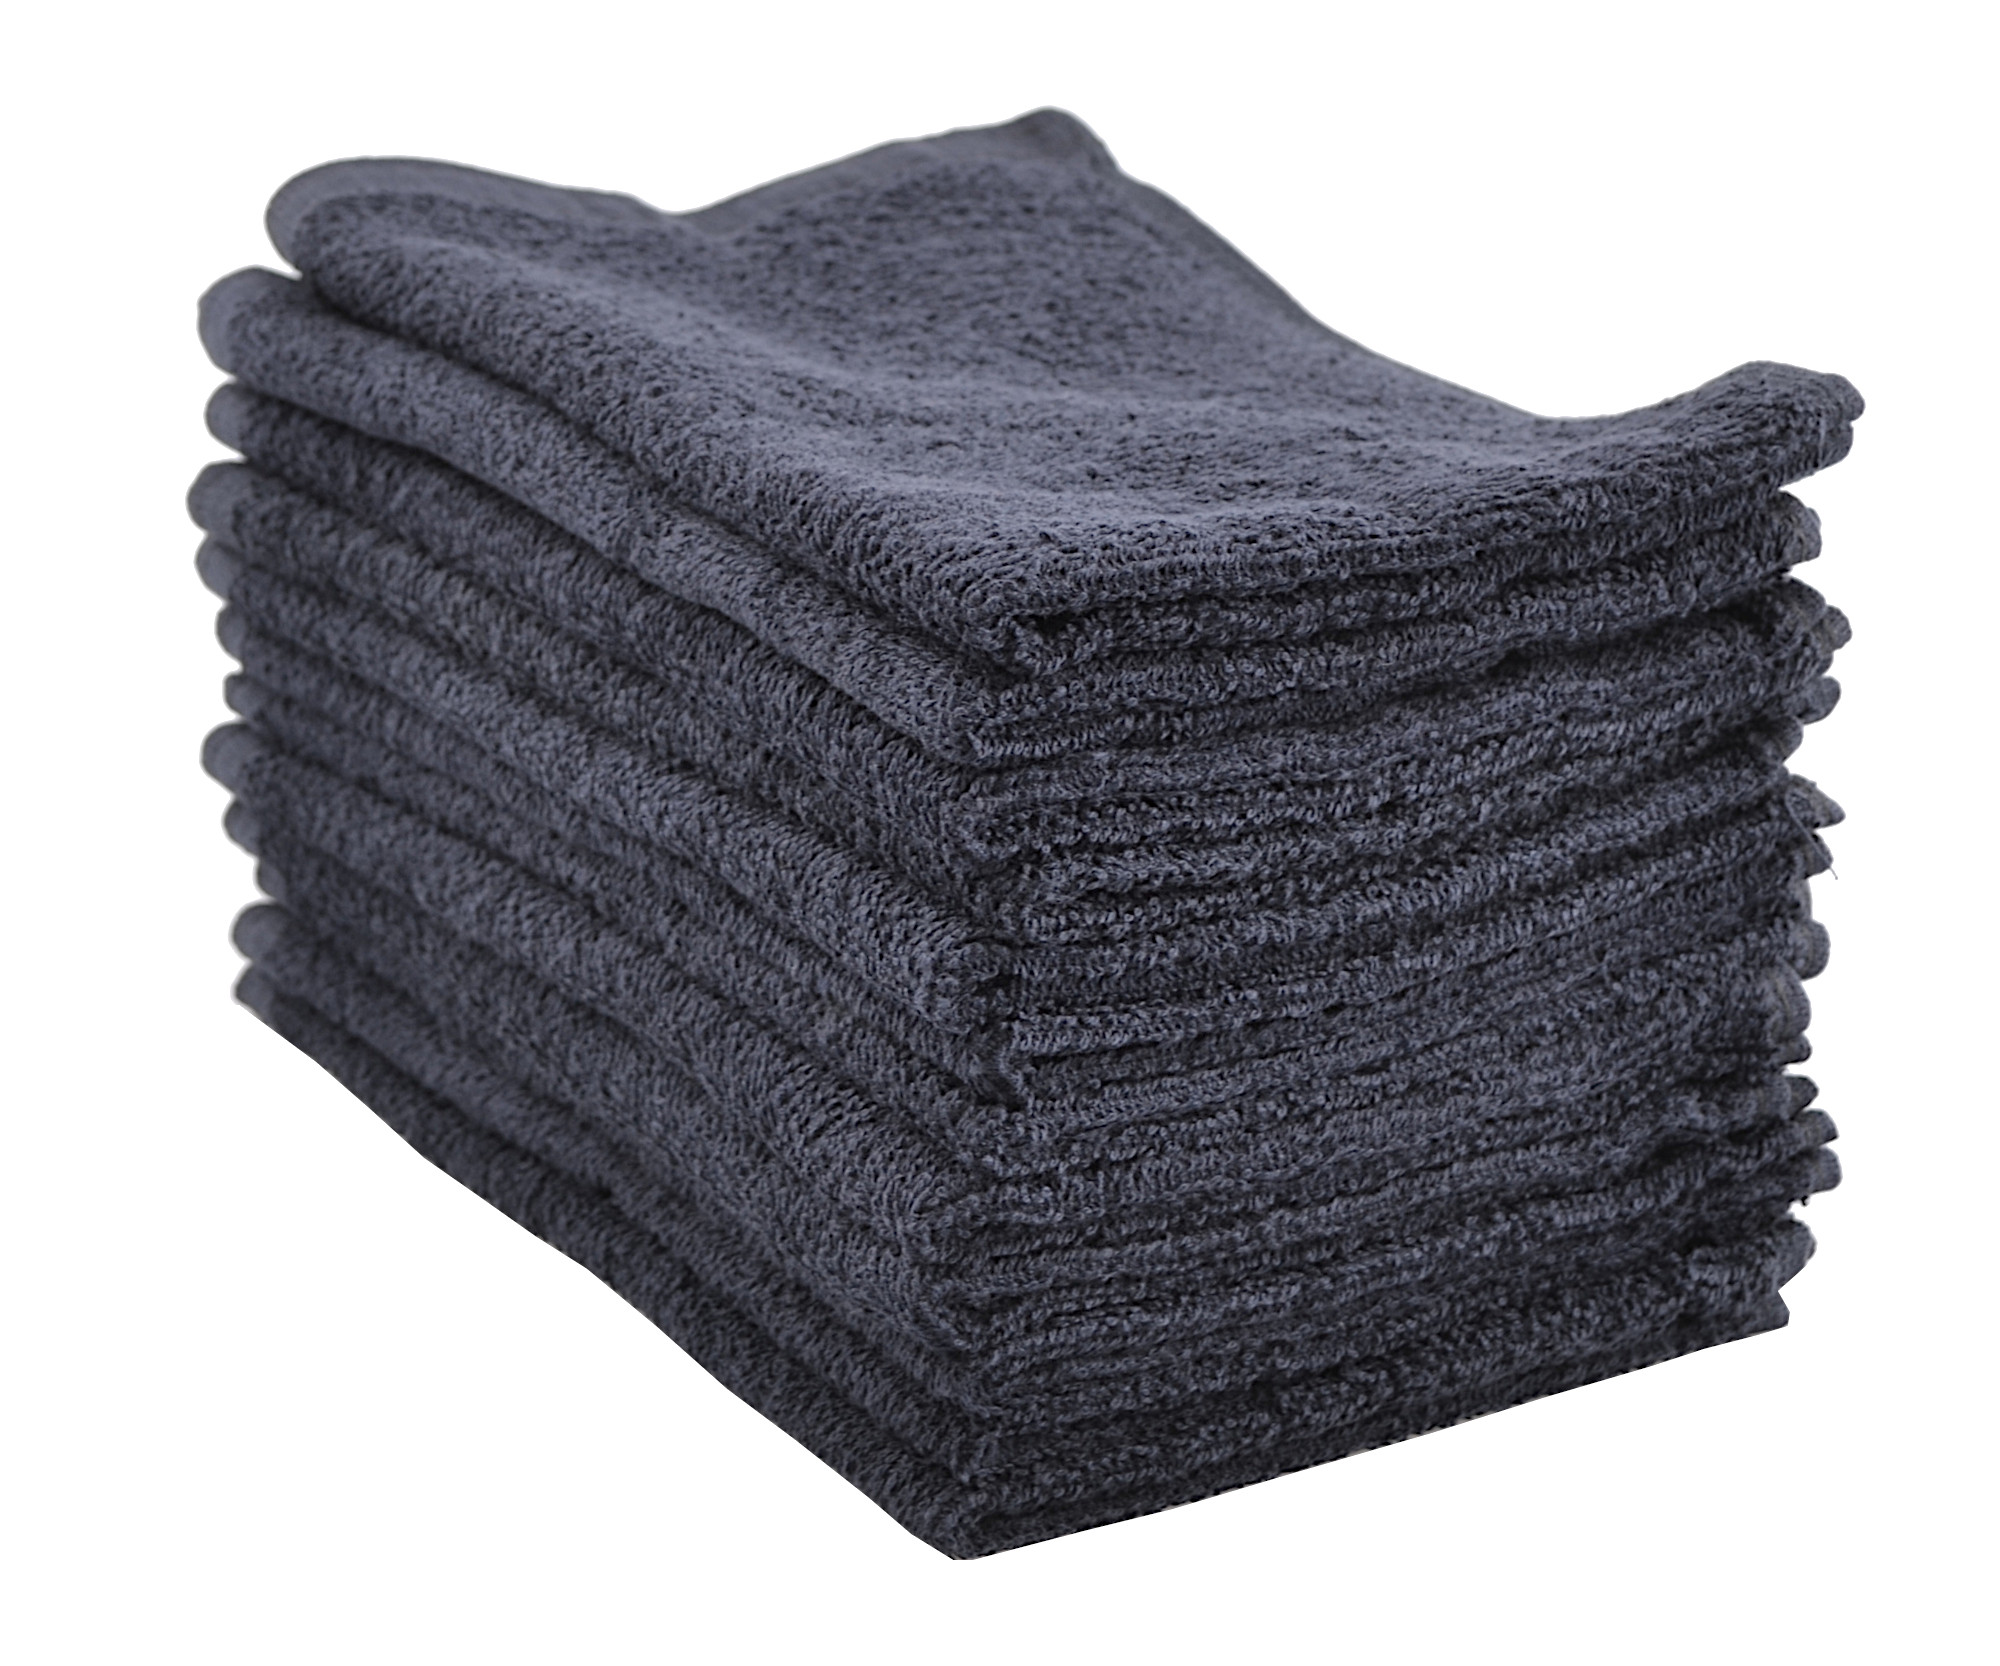 Ručníky froté 45 x 28 cm, 100% bavlna, Sibel, černé - 12 ks (3505002) + DÁREK ZDARMA